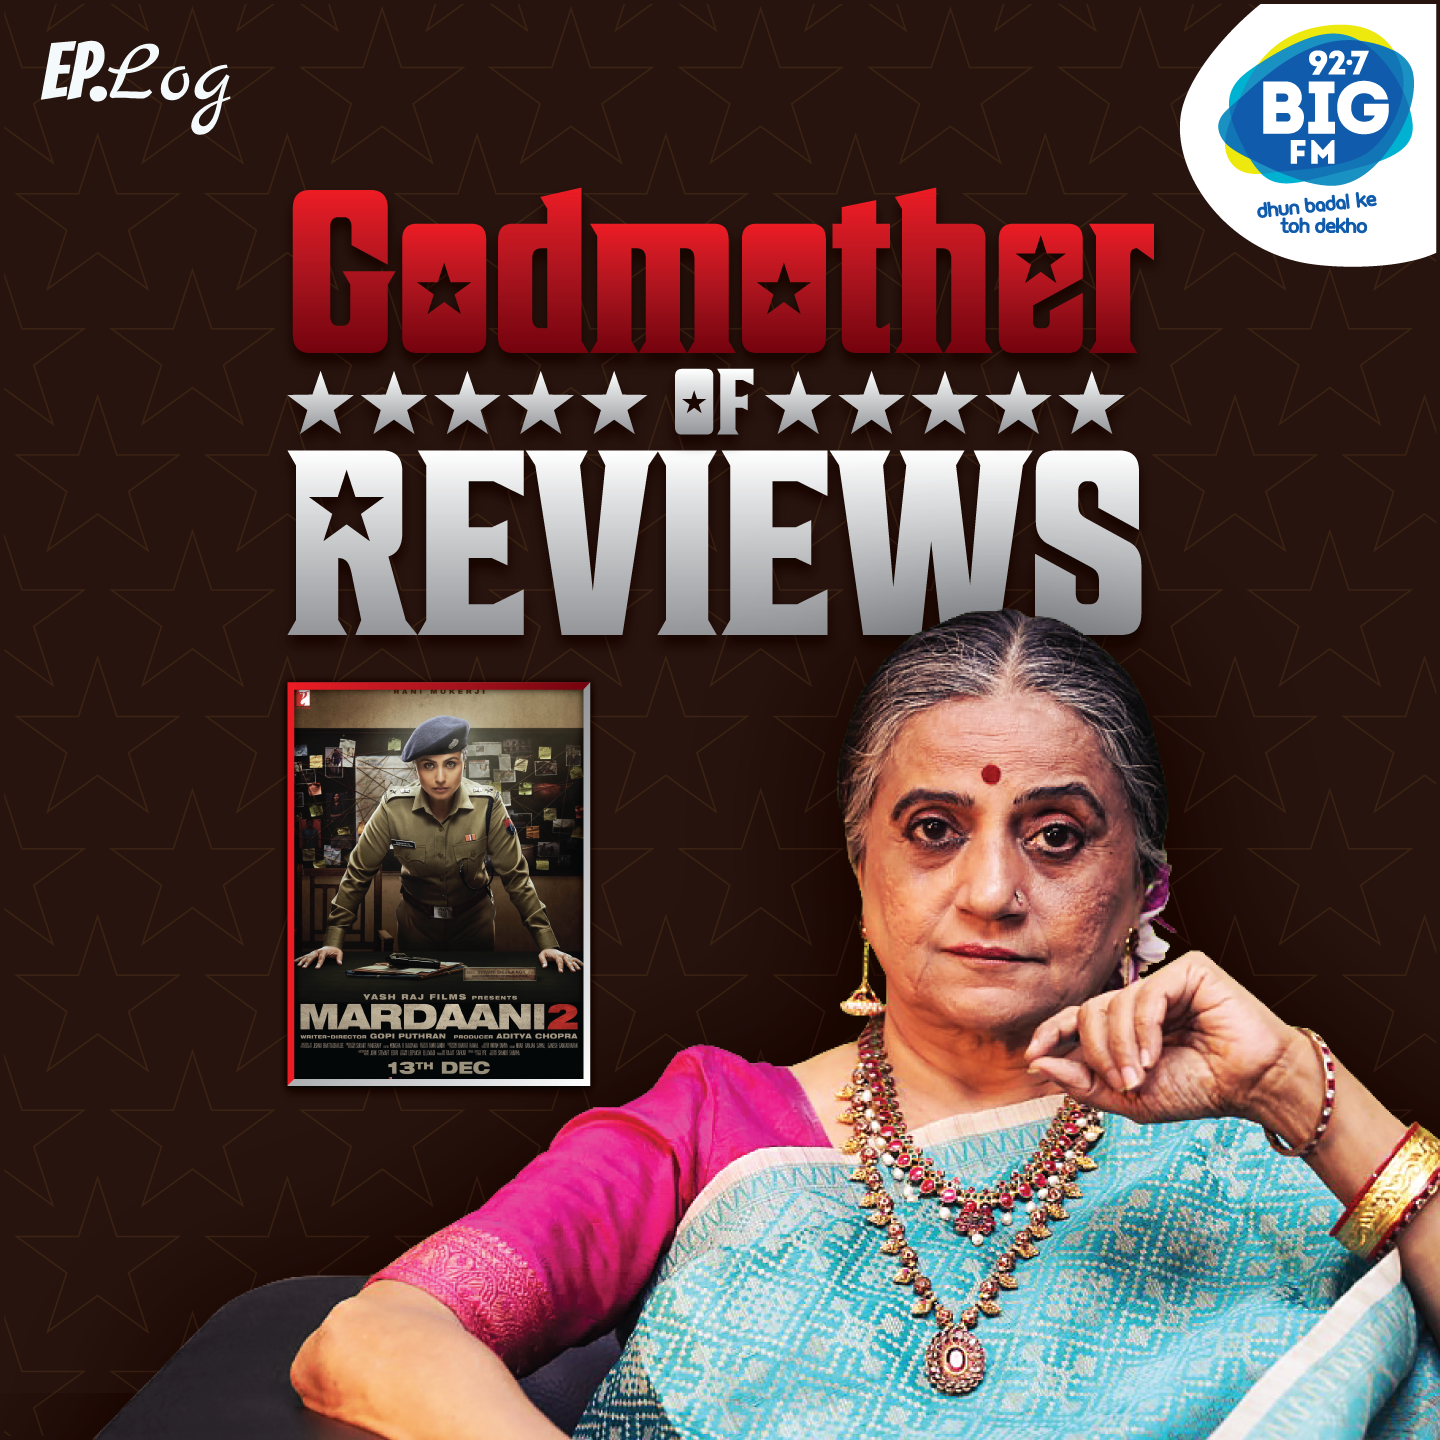 Godmother Of Reviews - MARDAANI 2